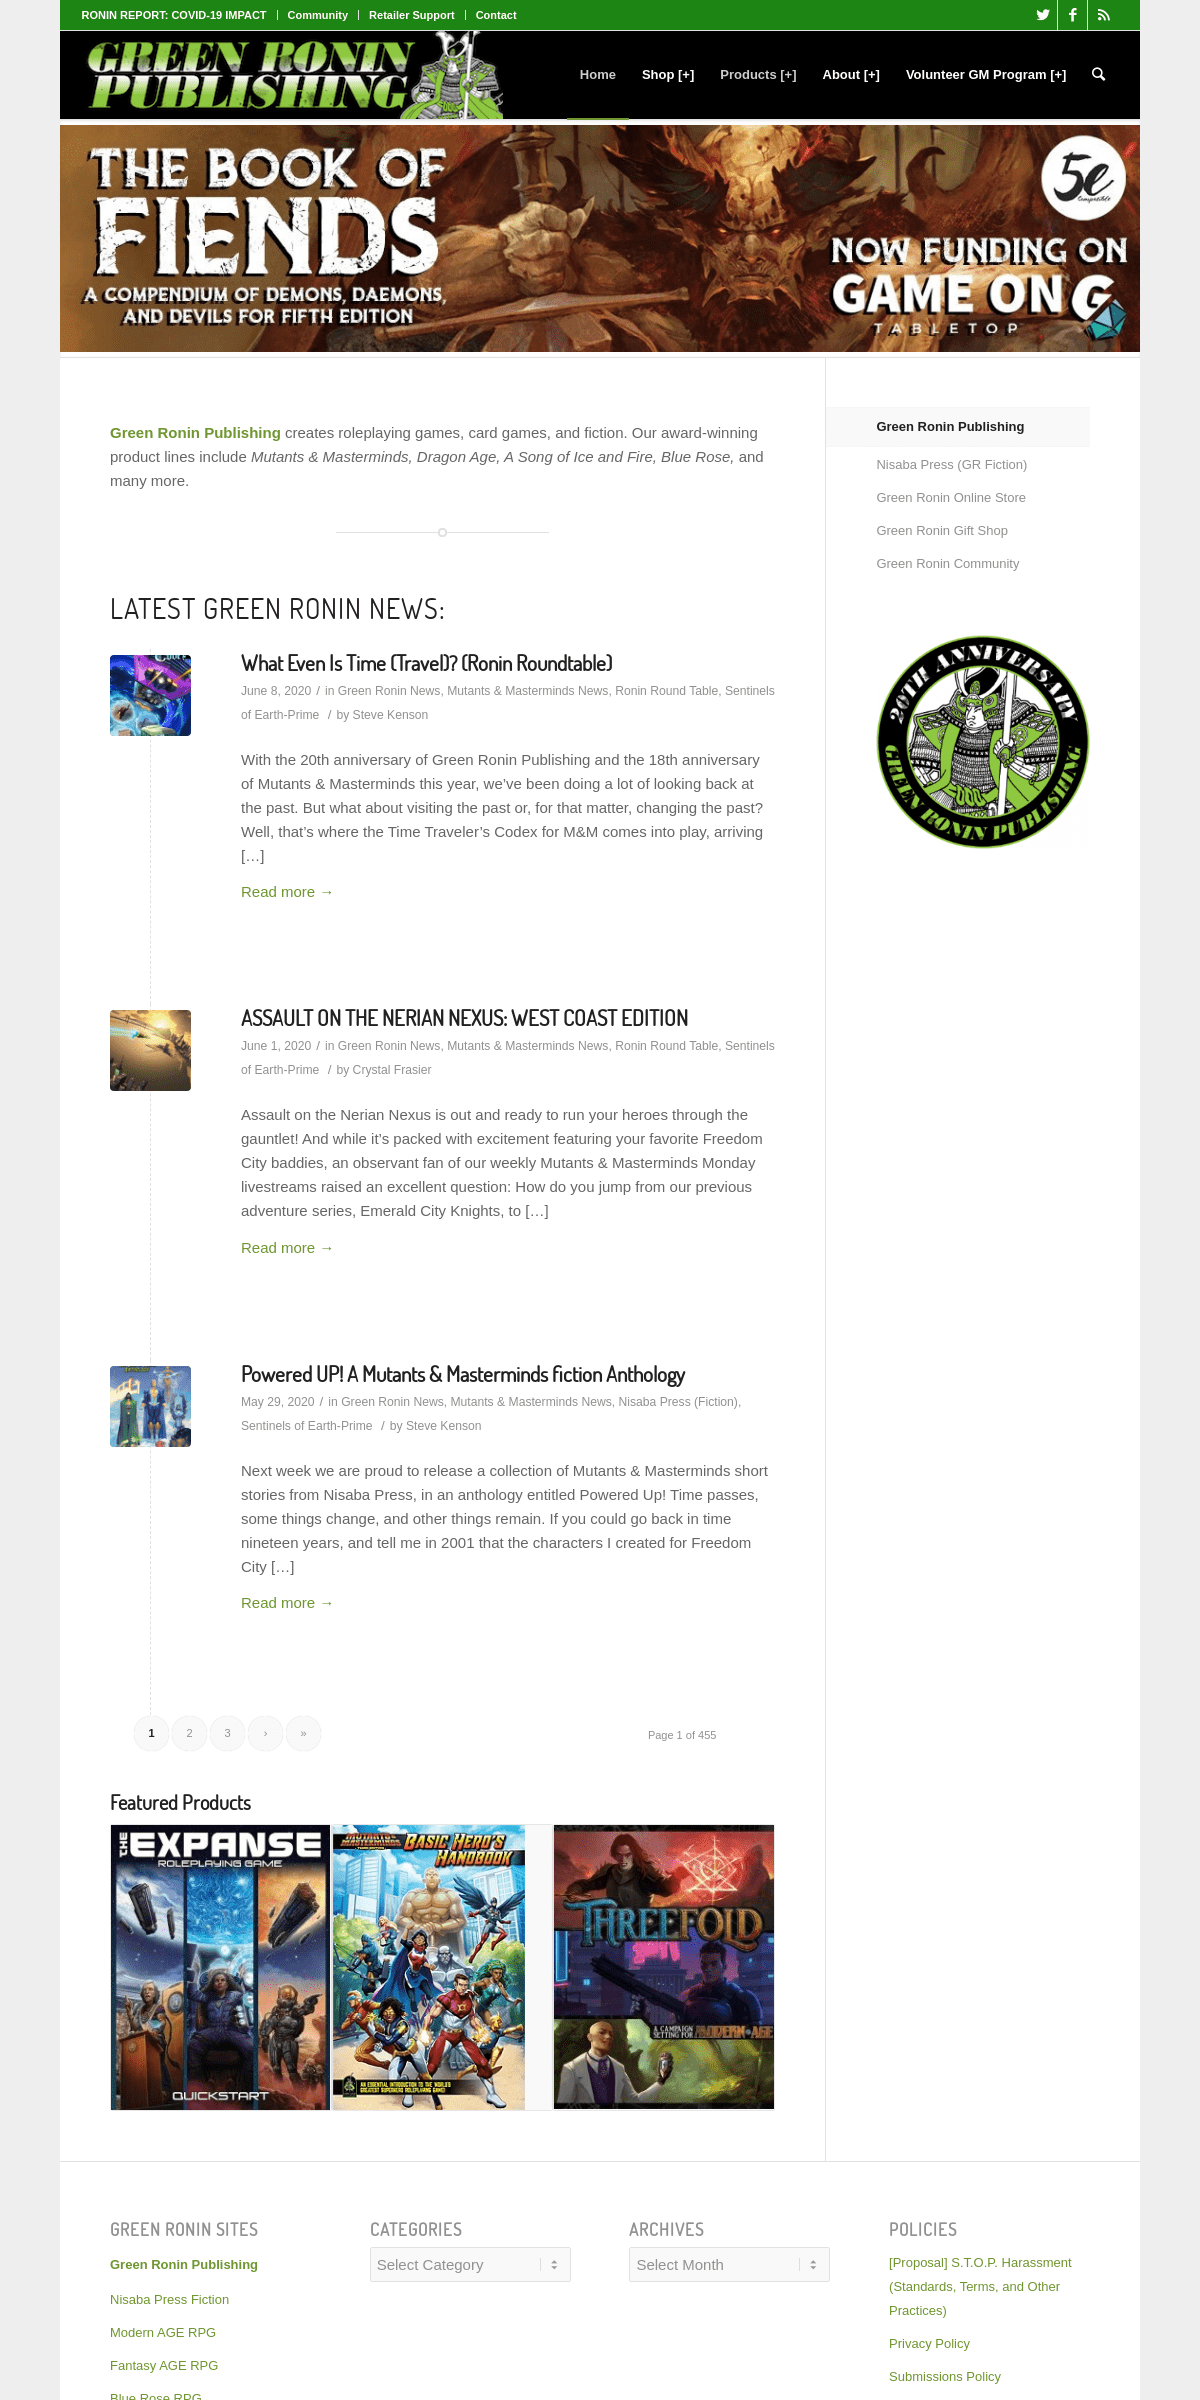 A complete backup of greenronin.com